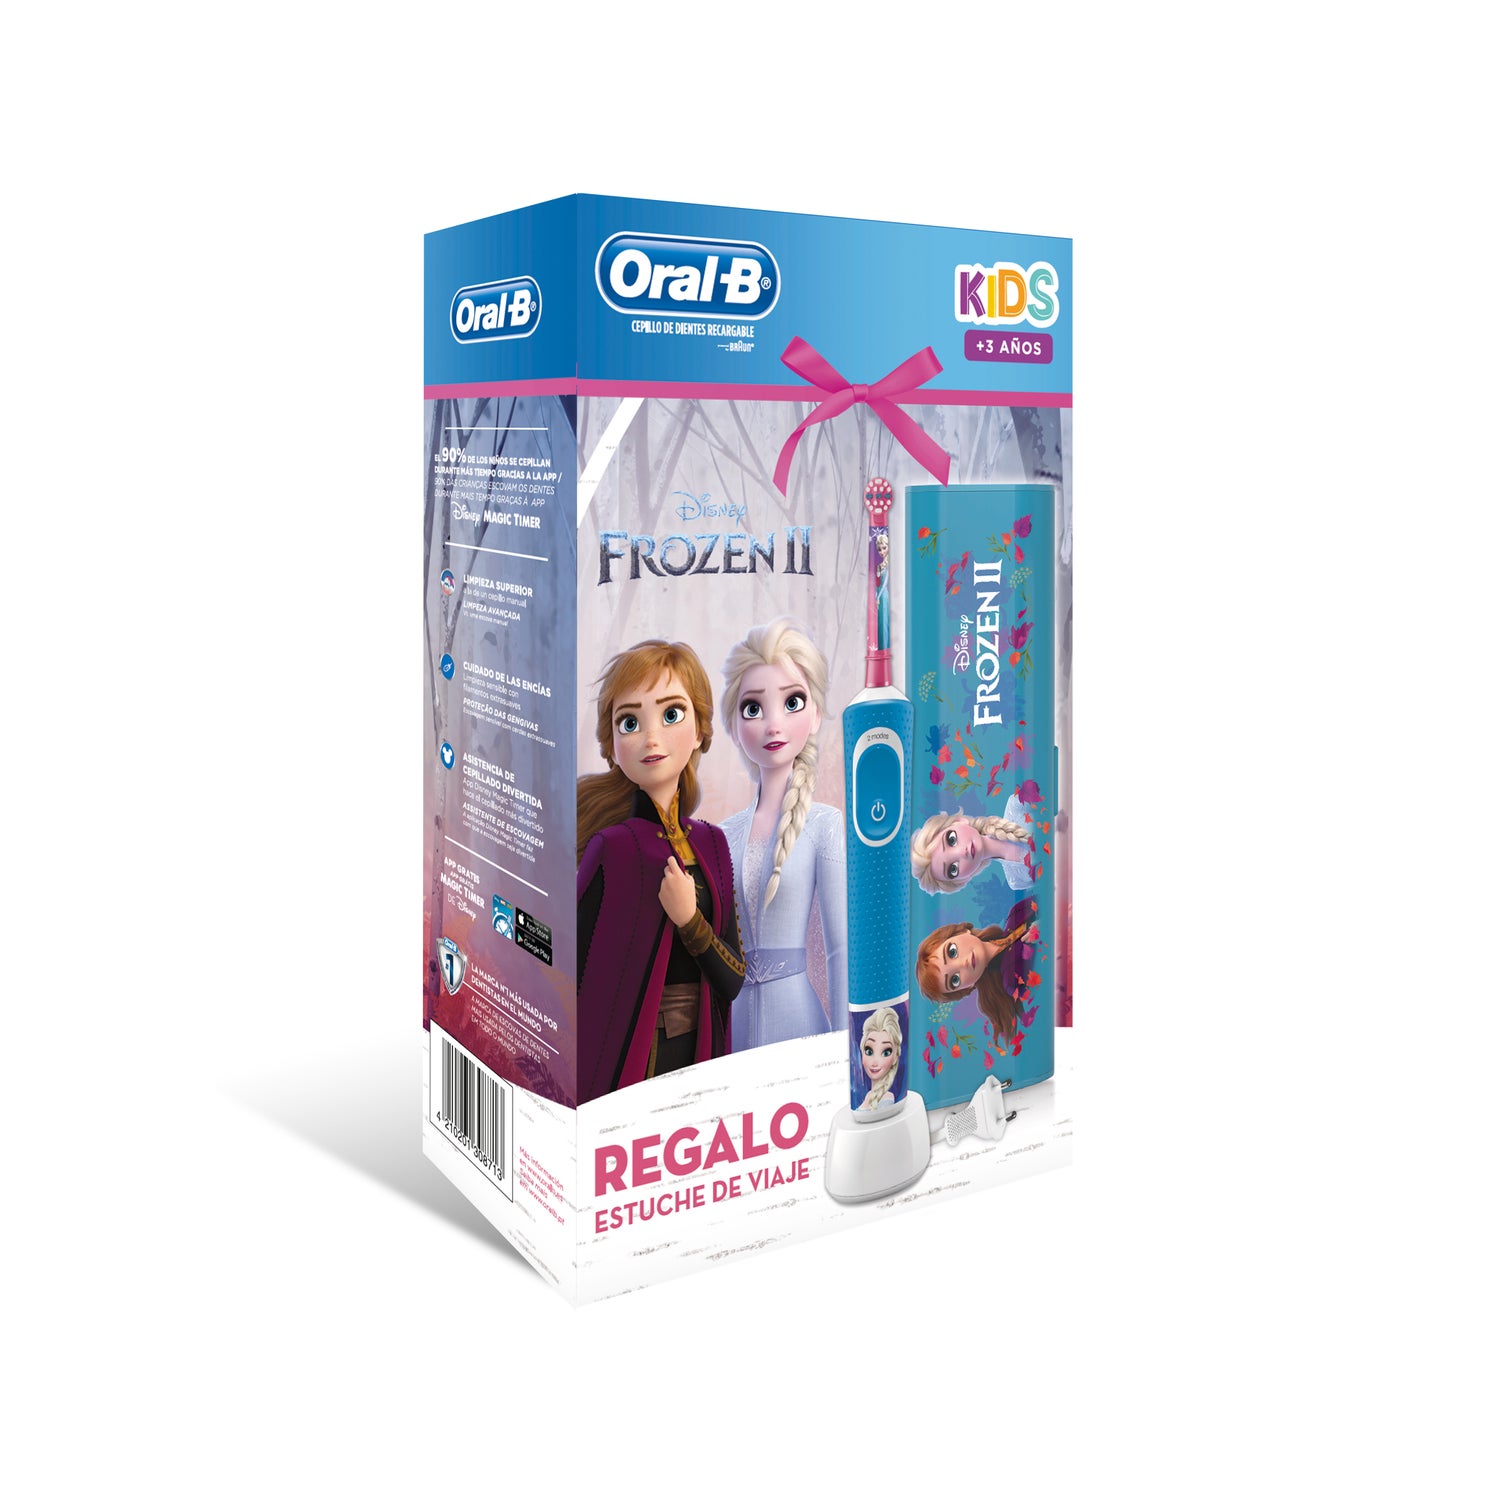 Oral-B D100 Kids Frozen Cepillo de Dientes Eléctrico Infantil + Estuche